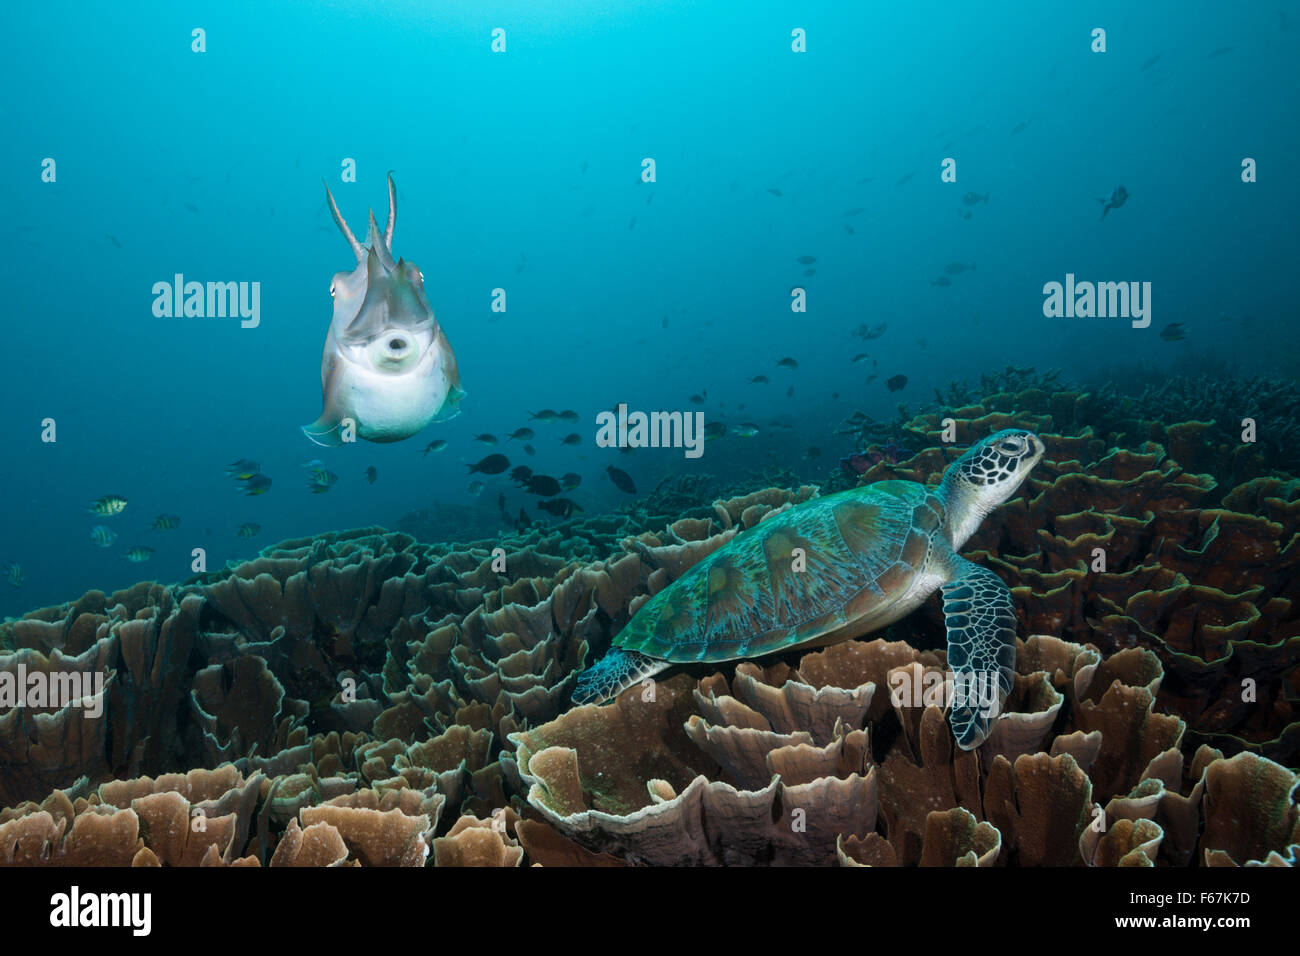 Broadclub Tintenfisch und grünen Meeresschildkröte, Sepia finden, Komodo National Park, Indonesien Stockfoto